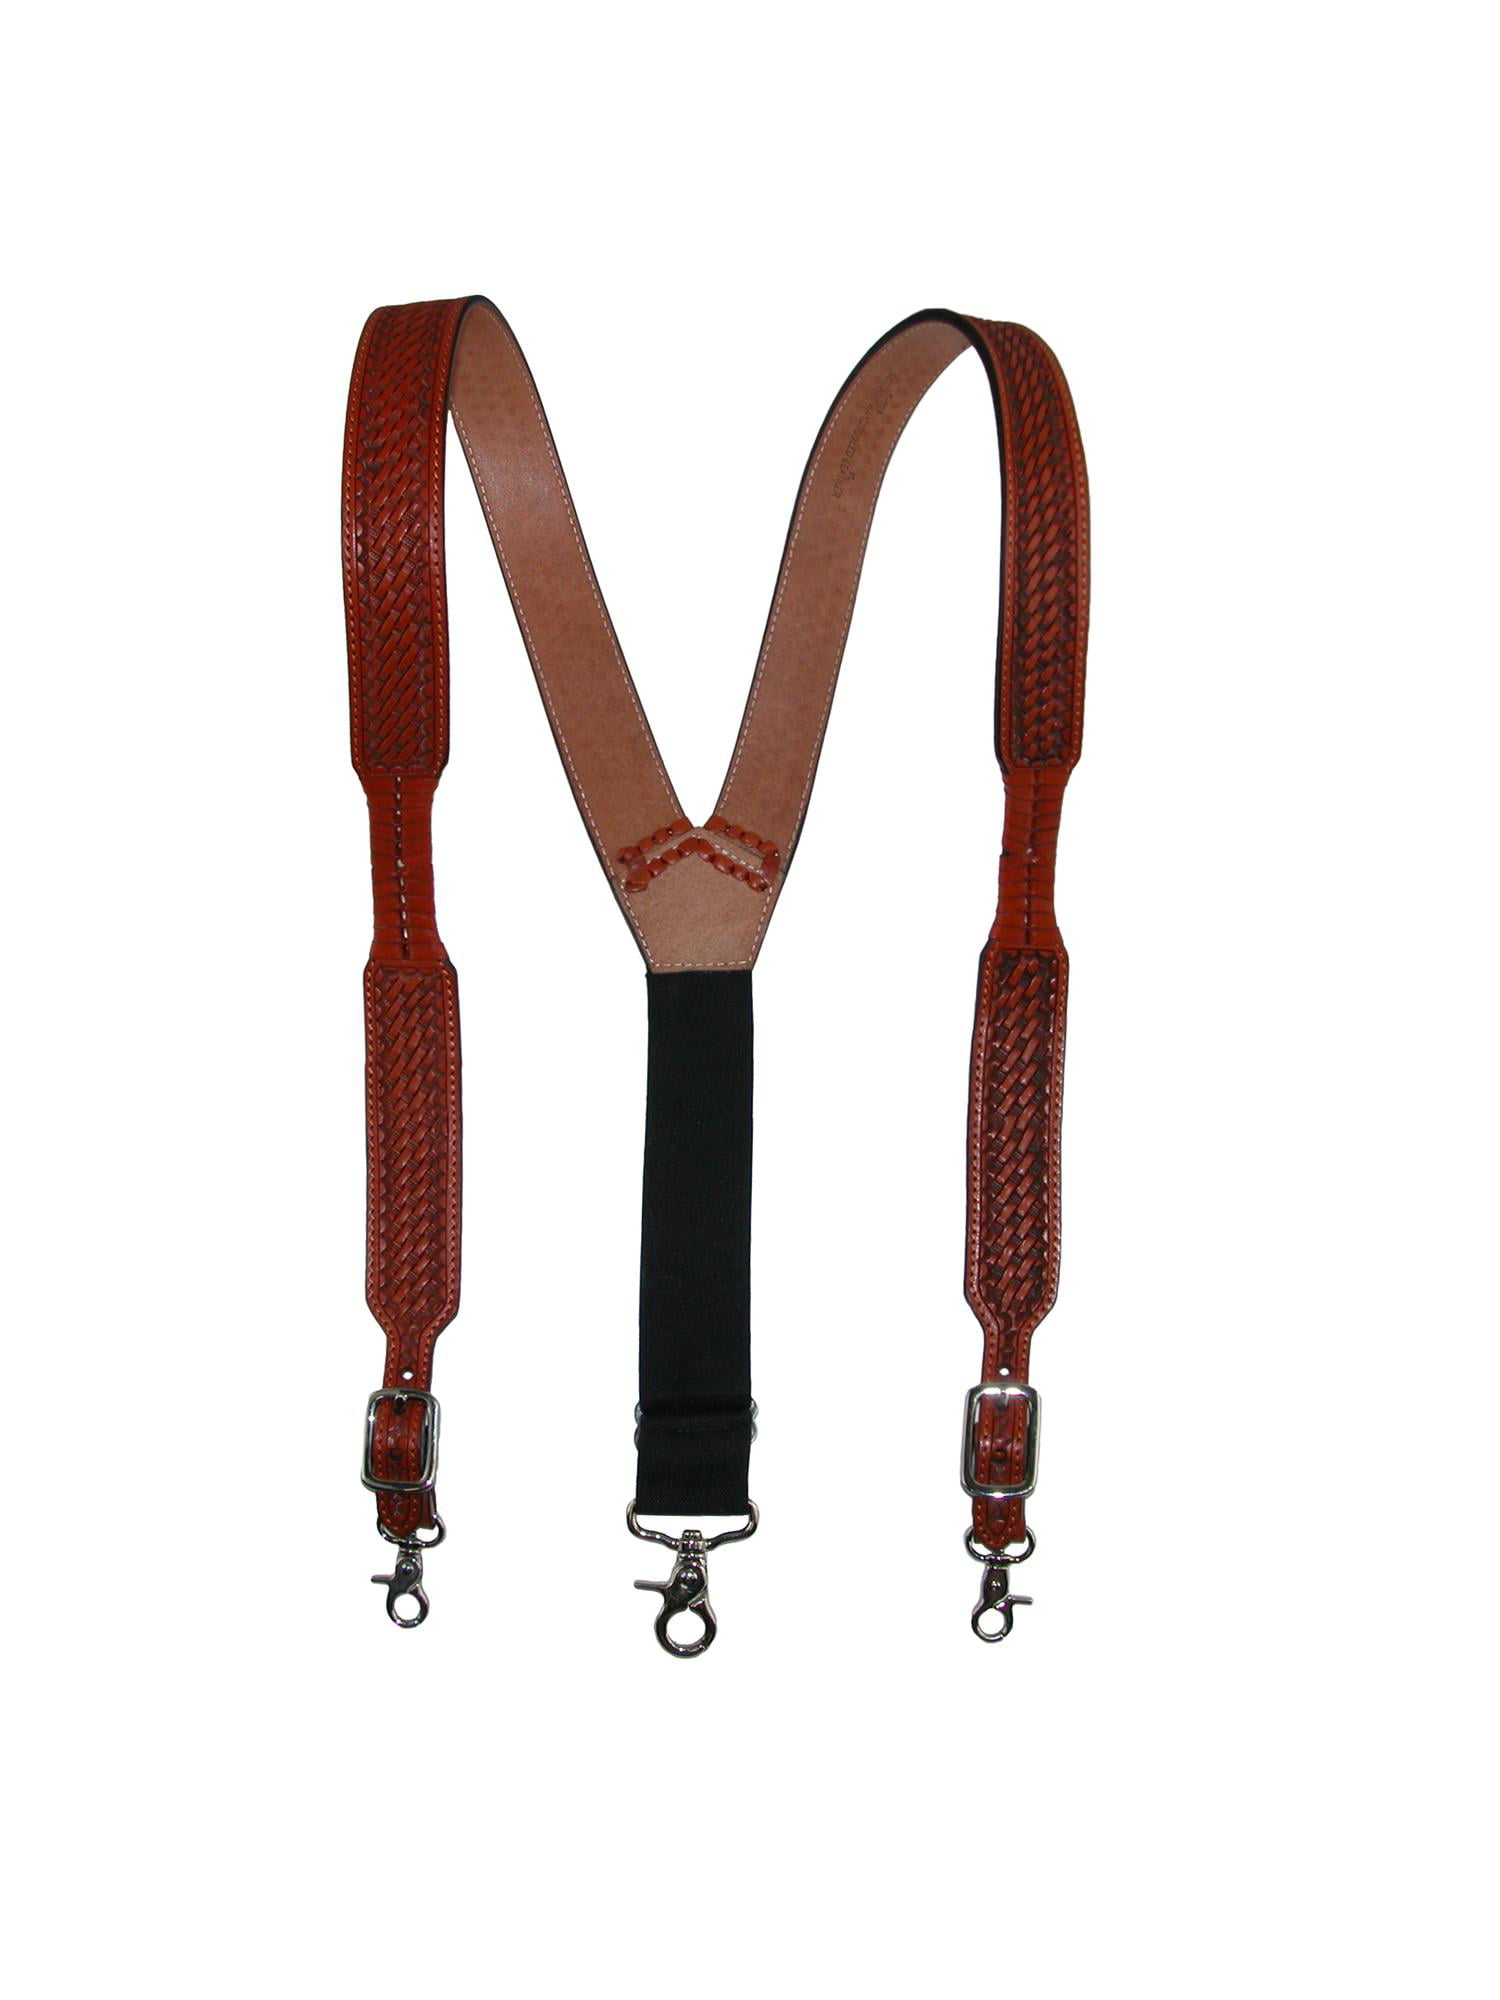 JIERKU Mens Suspenders with Swivel Hooks on Belt Loops Heavy Duty Big and Tal... 